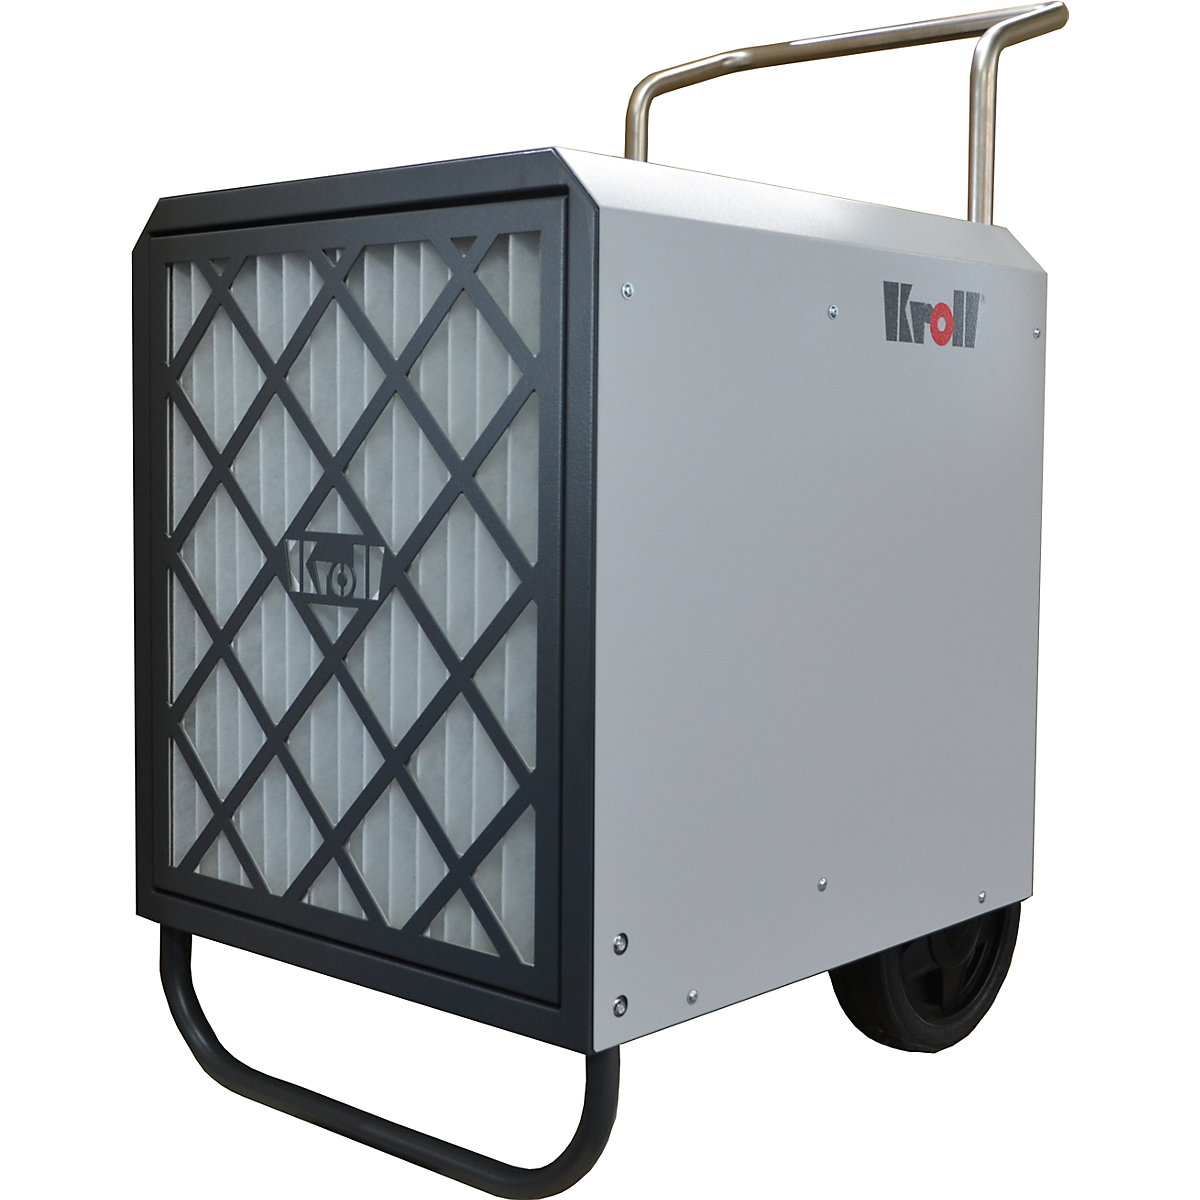 Uređaj za pročišćavanje zraka – Kroll